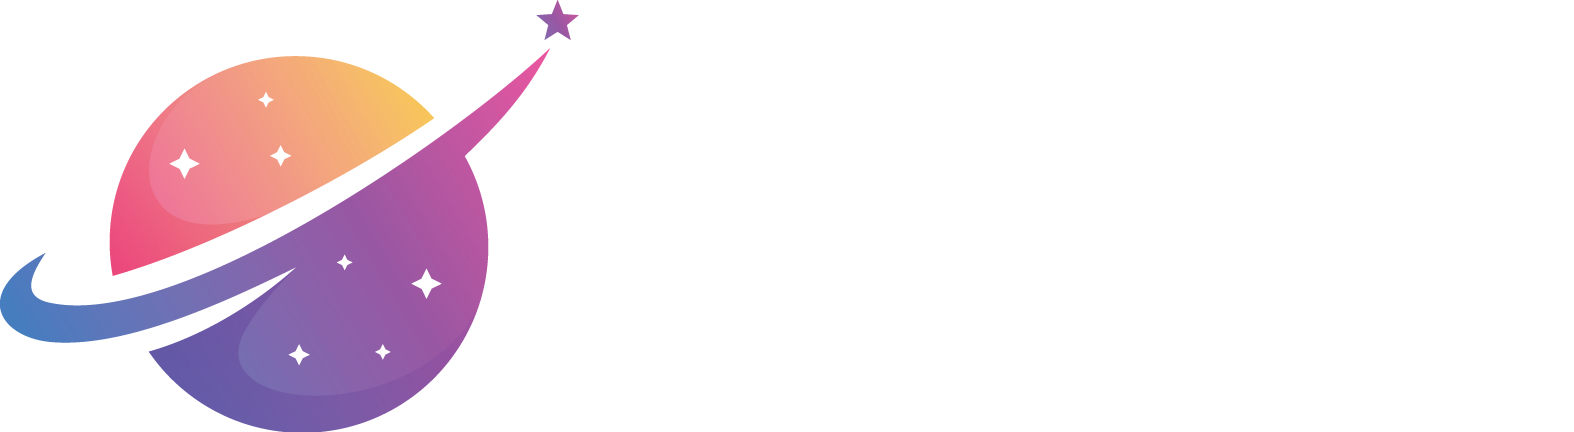 Milky Way Estates